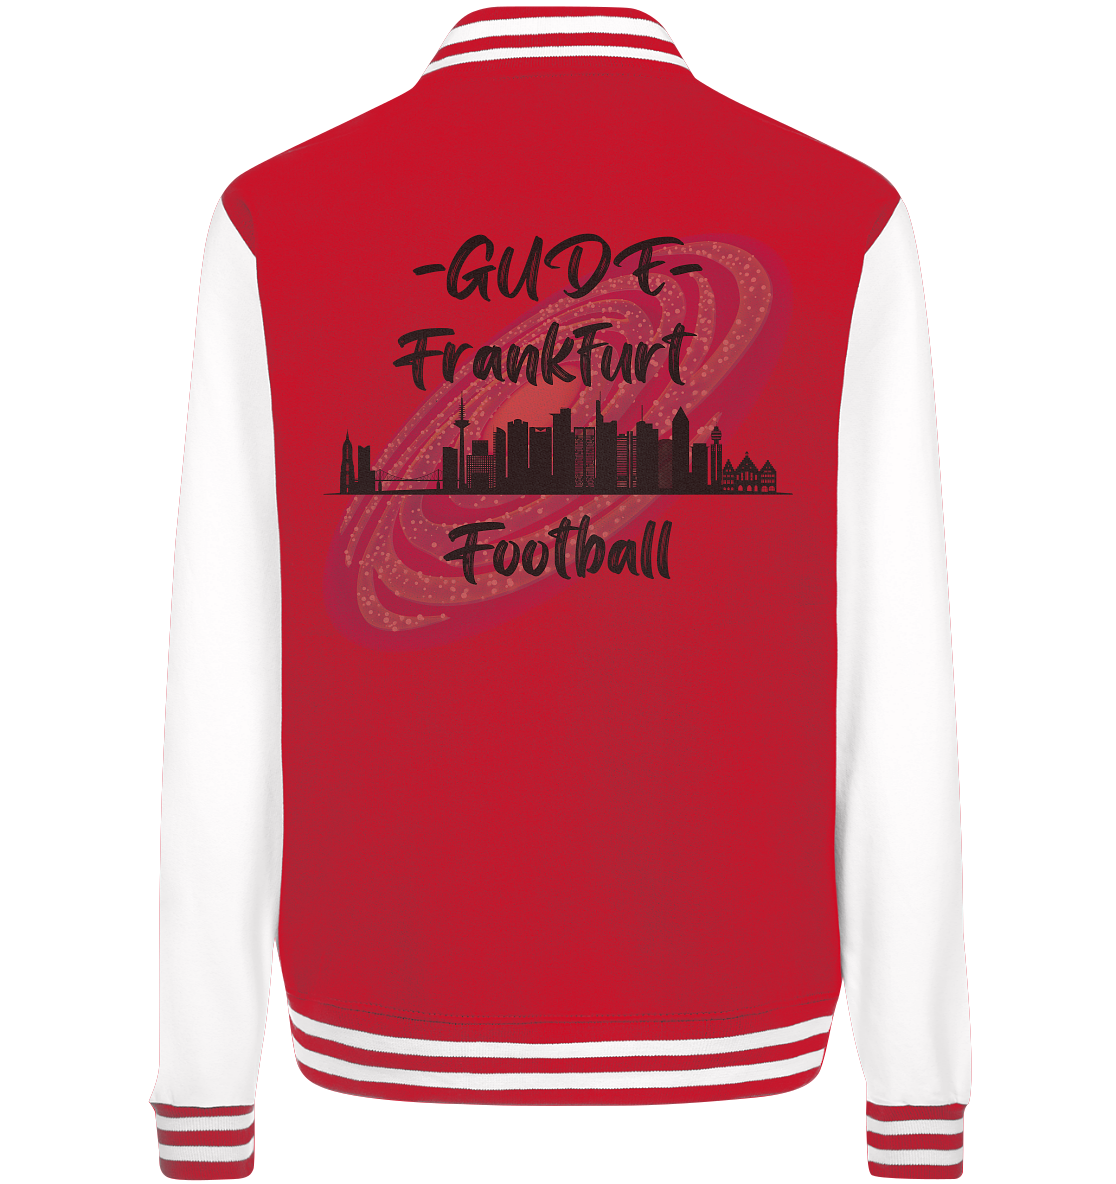 Gude Frankfurt Football (schwarze Schrift) - College Jacket - Football Unity Football Unity